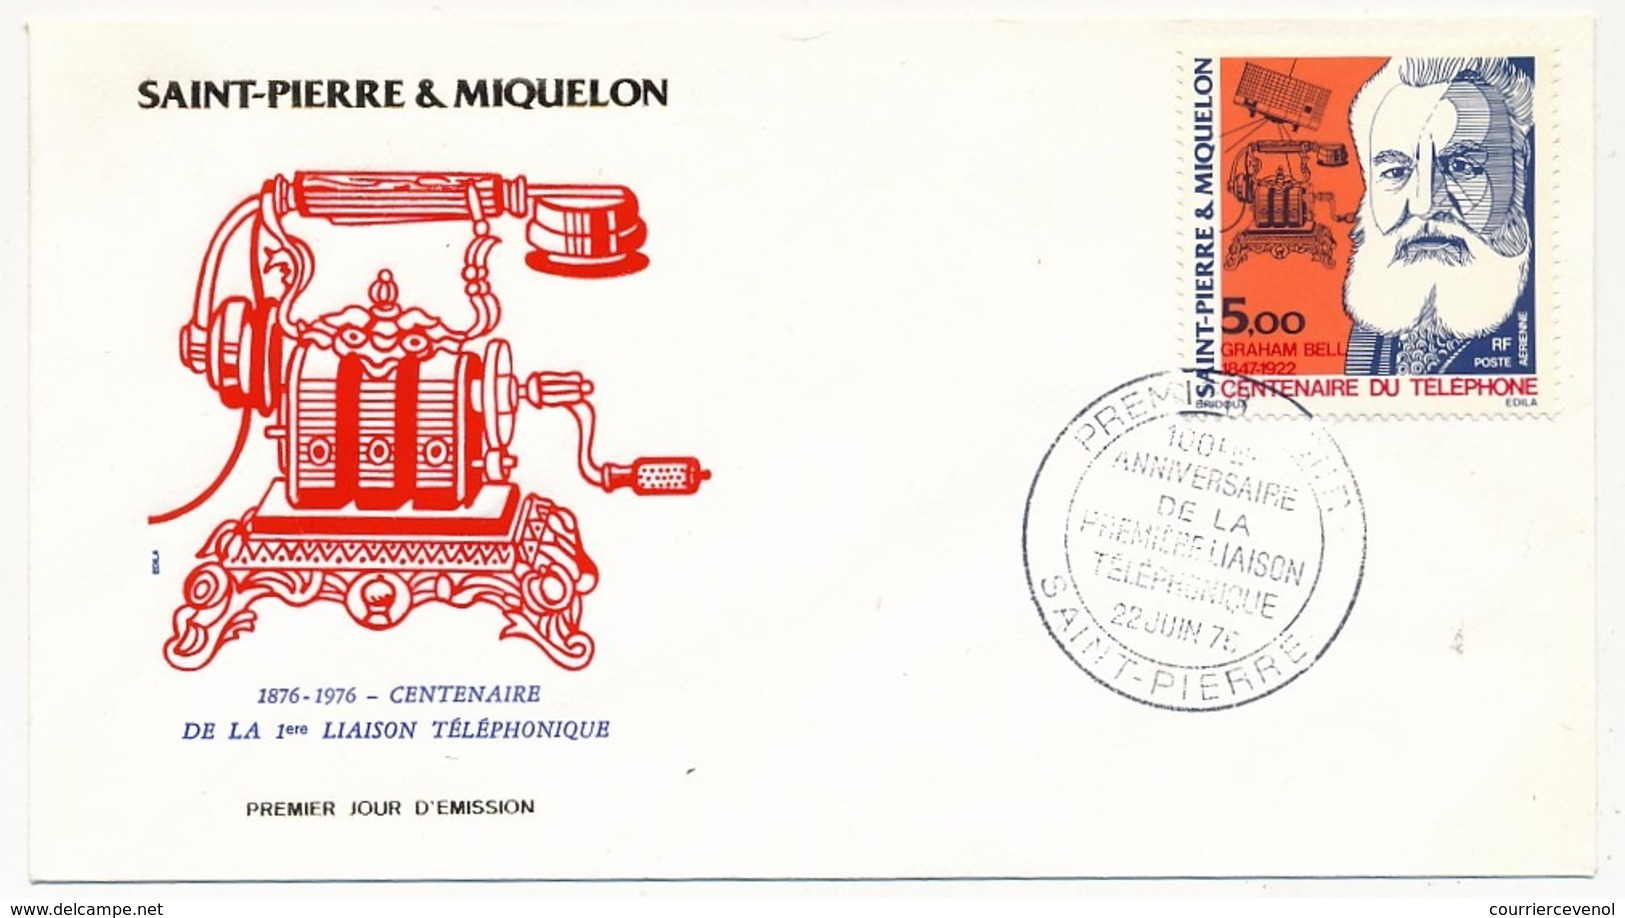 SAINT PIERRE ET MIQUELON - Enveloppe FDC - Centenaire De La Première Liaison Téléphonique - G. BELL - 1976 - Telekom